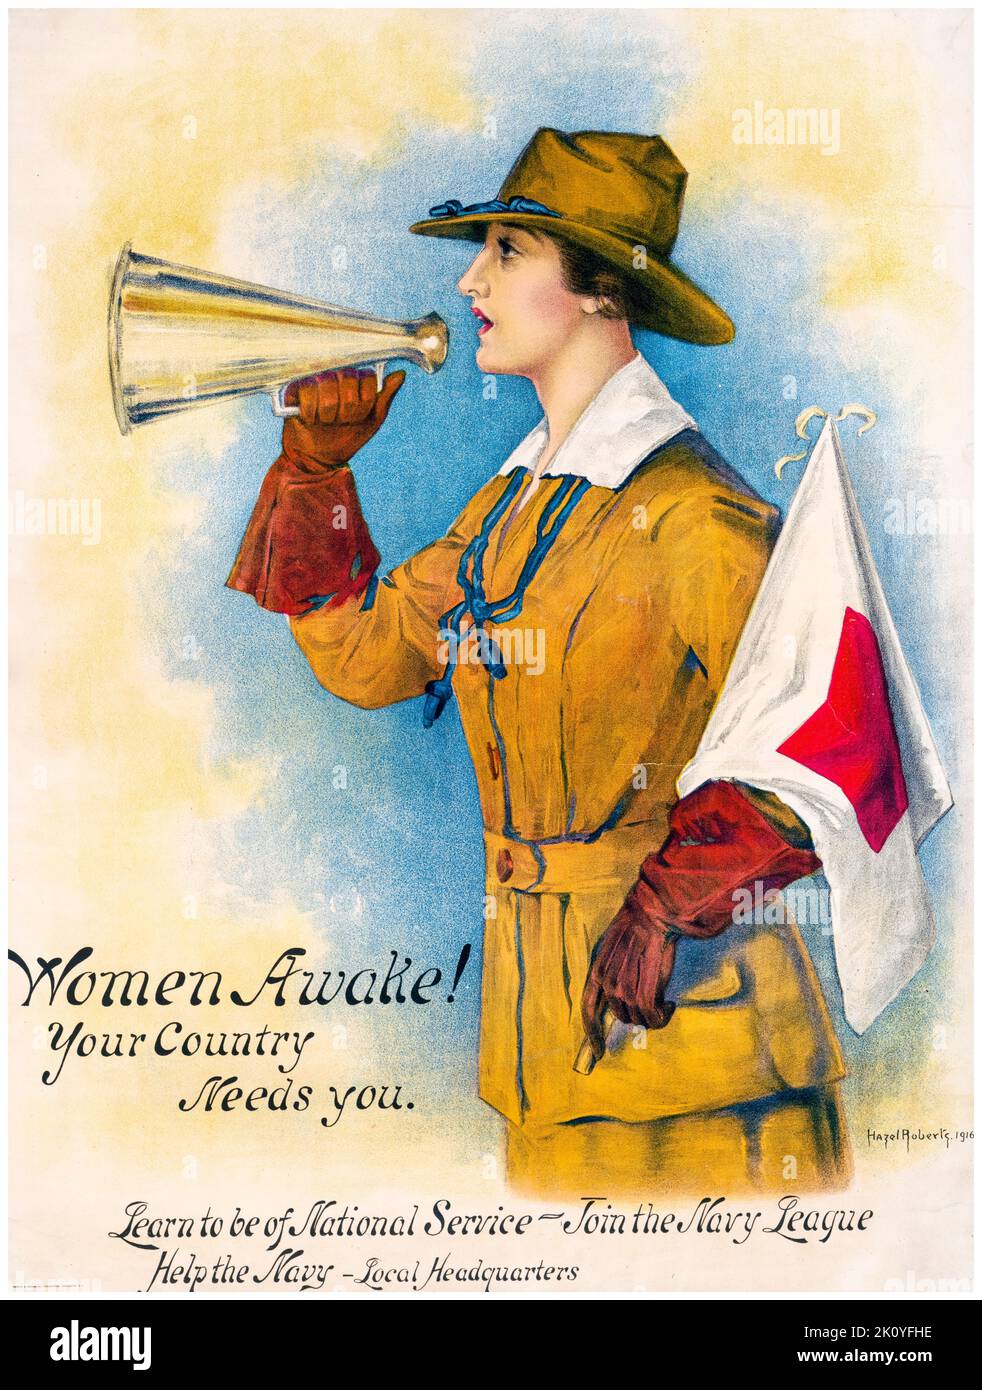 American, US, WW1, manifesto di reclutamento femminile, Women Wake!: Il vostro paese ha bisogno di voi, unisca la lega della marina, da Hazel Roberts, 1916 Foto Stock